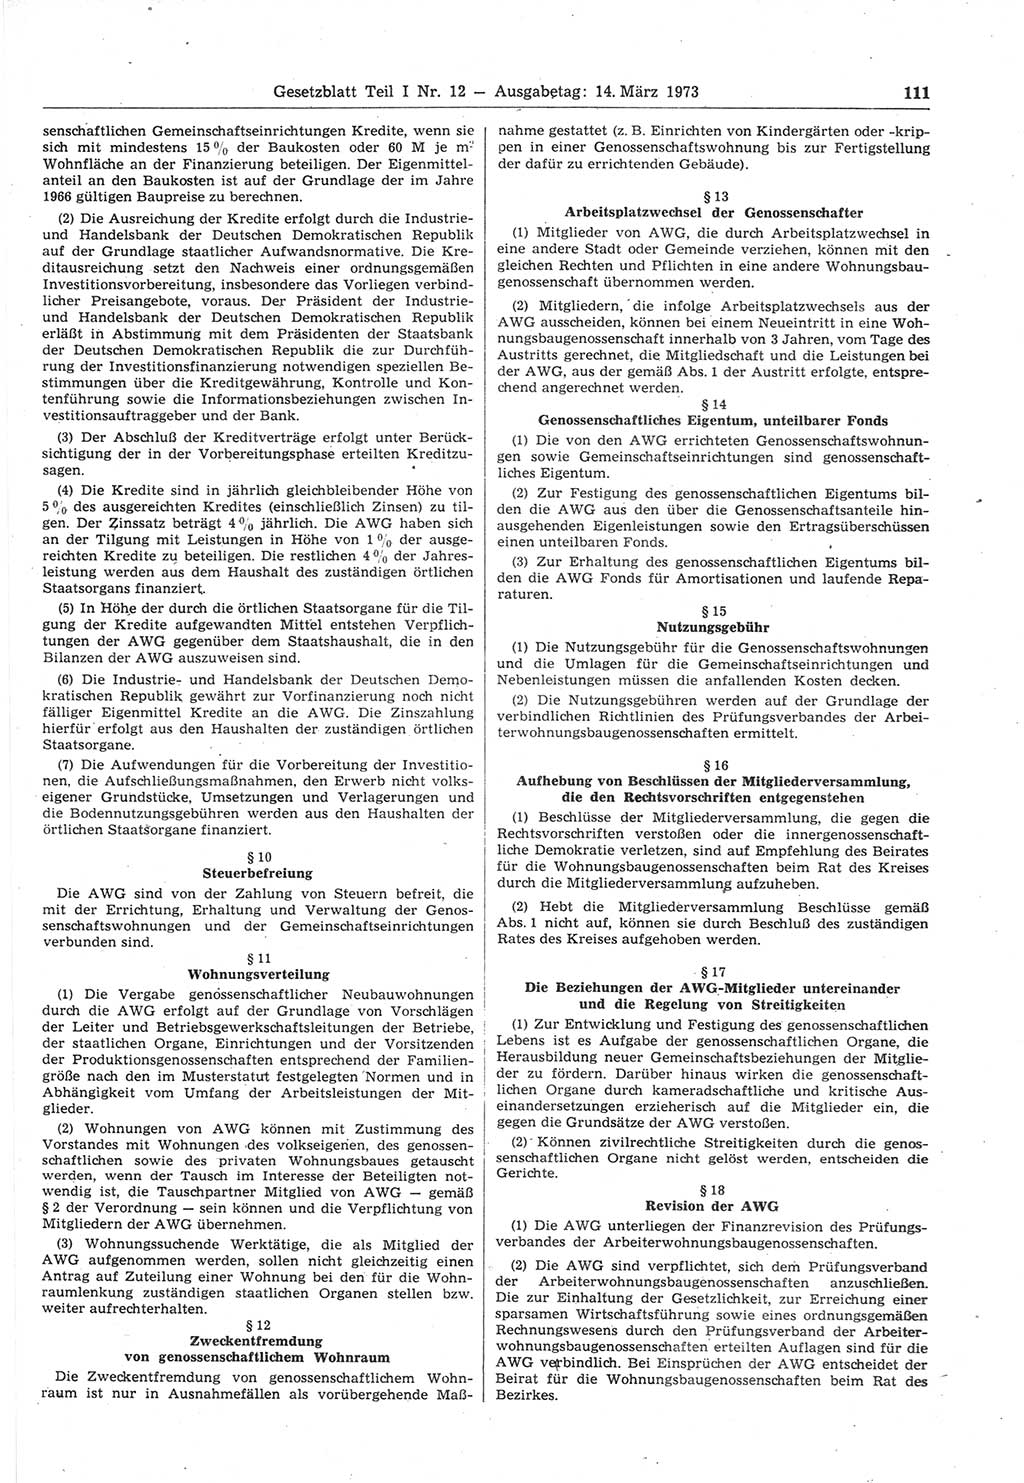 Gesetzblatt (GBl.) der Deutschen Demokratischen Republik (DDR) Teil Ⅰ 1973, Seite 111 (GBl. DDR Ⅰ 1973, S. 111)